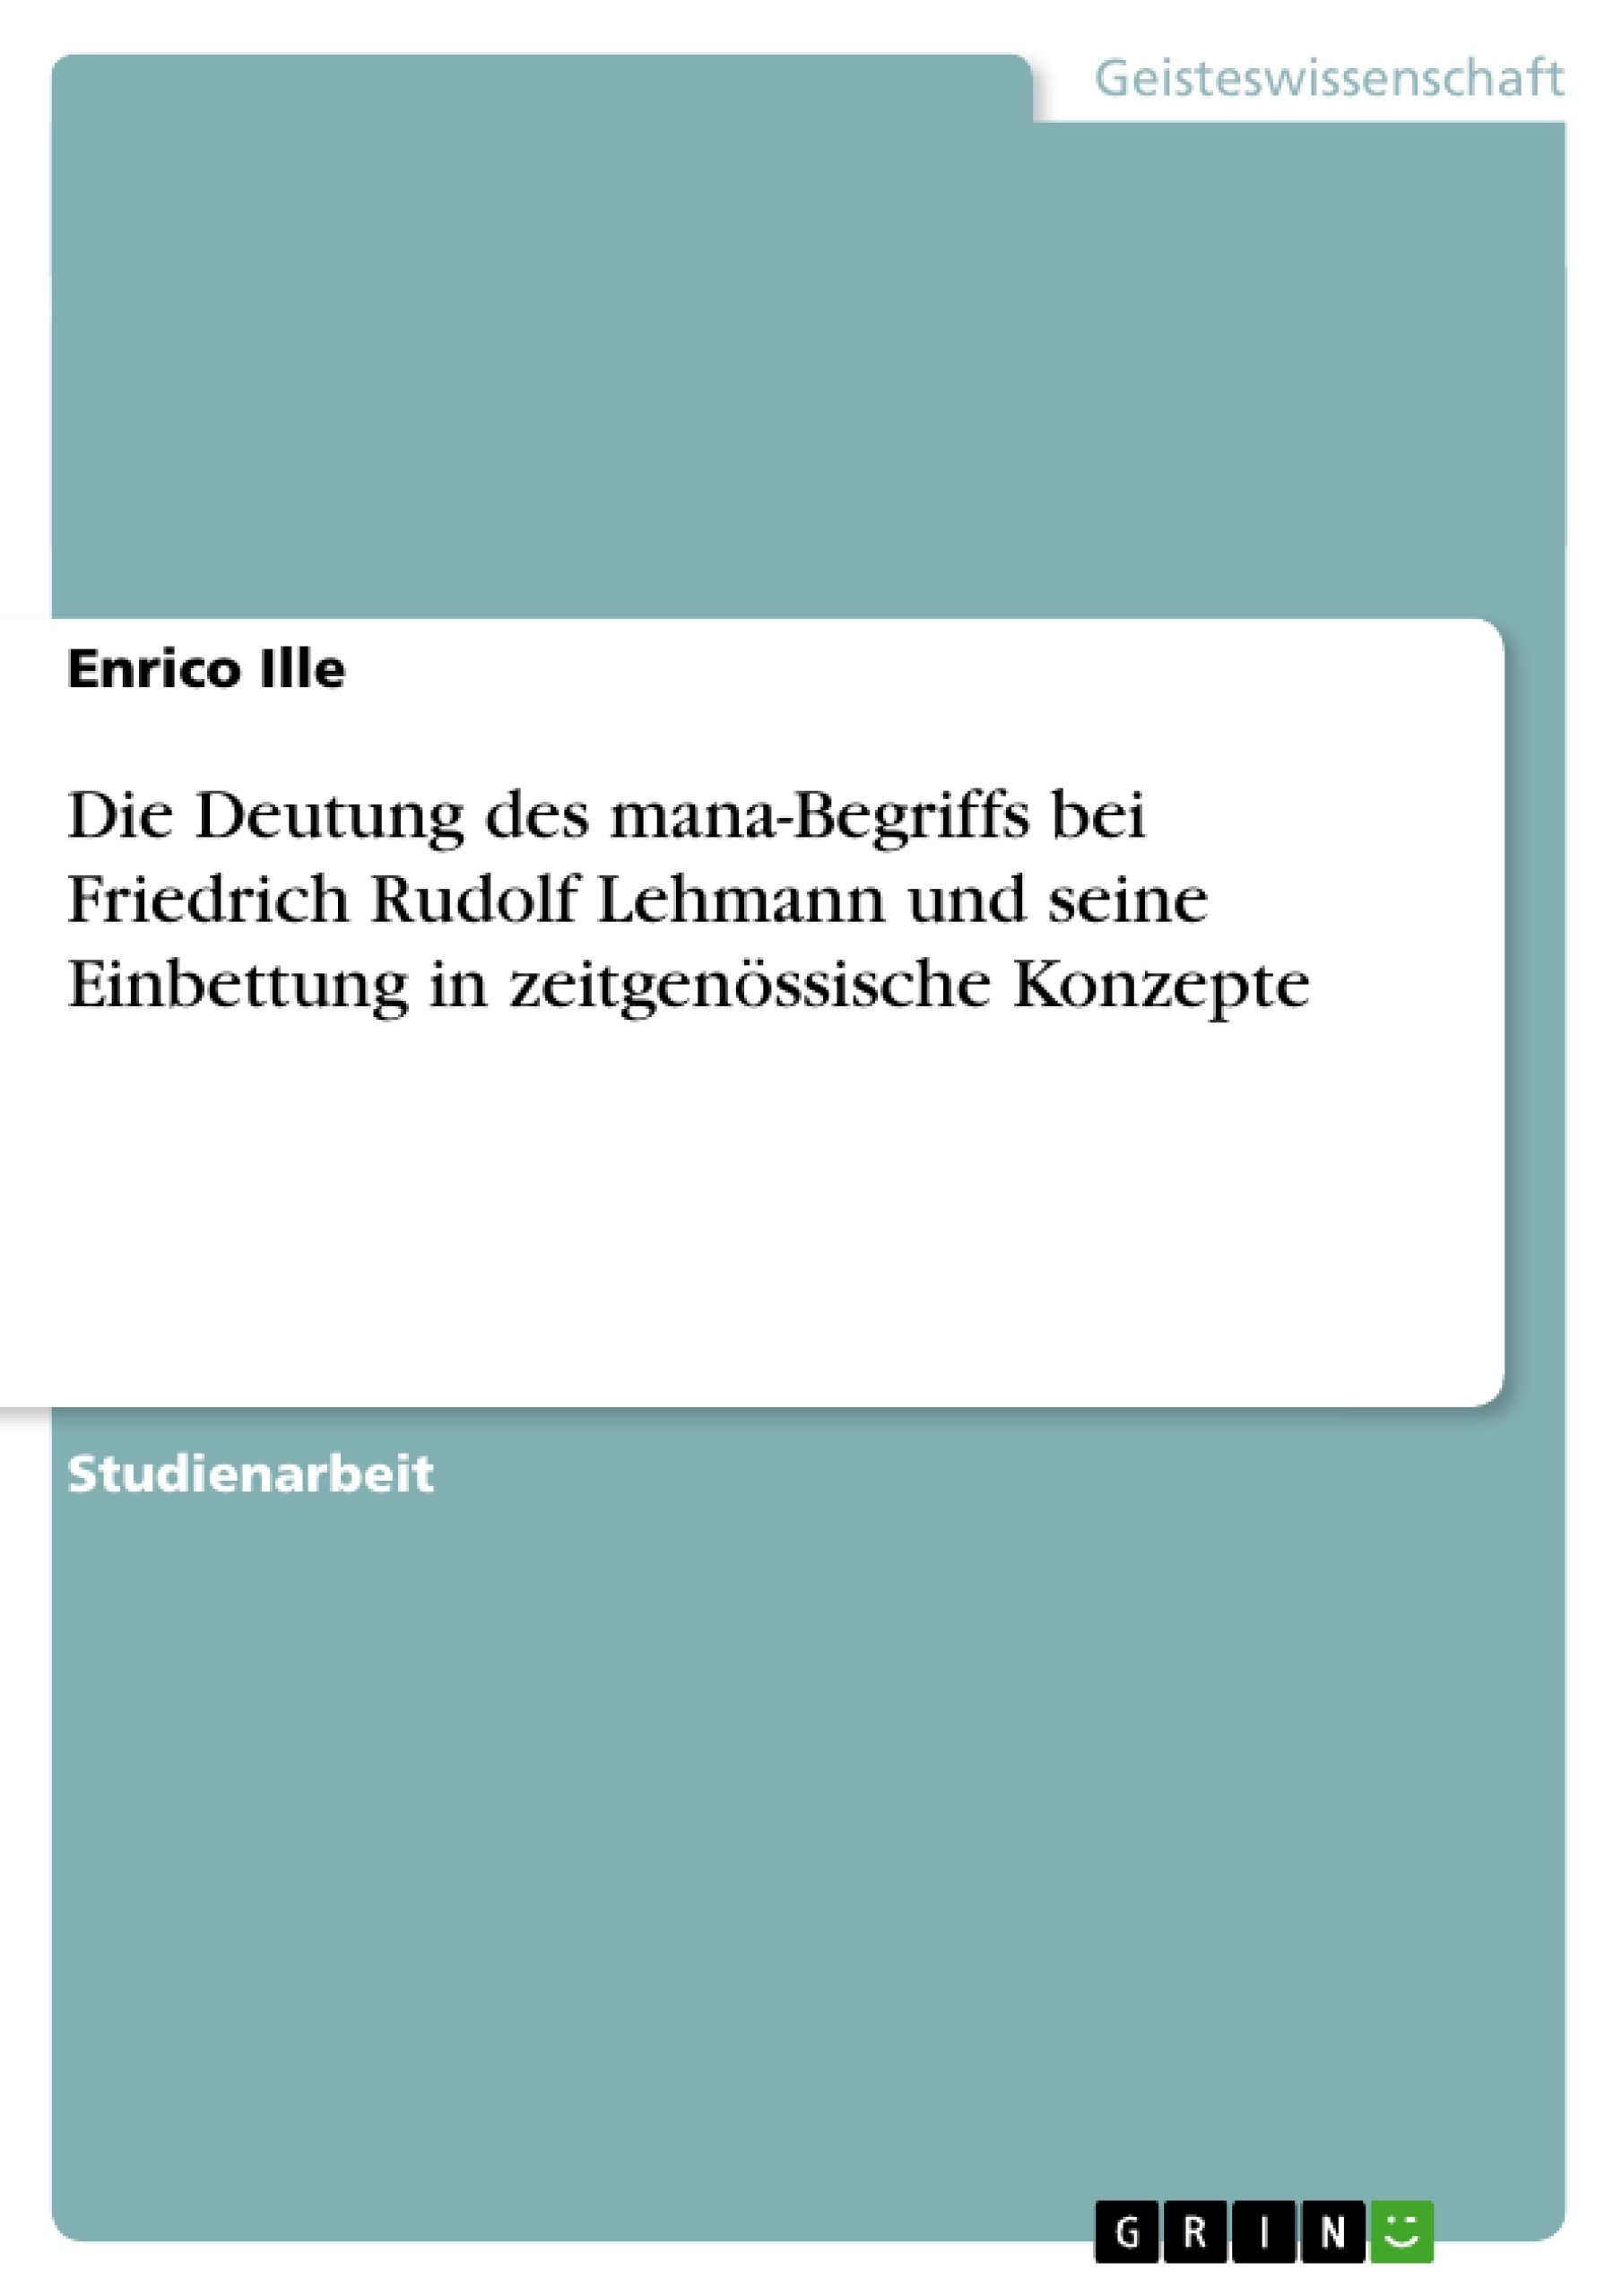 Title: Die Deutung des mana-Begriffs bei Friedrich Rudolf Lehmann und seine Einbettung in zeitgenössische Konzepte